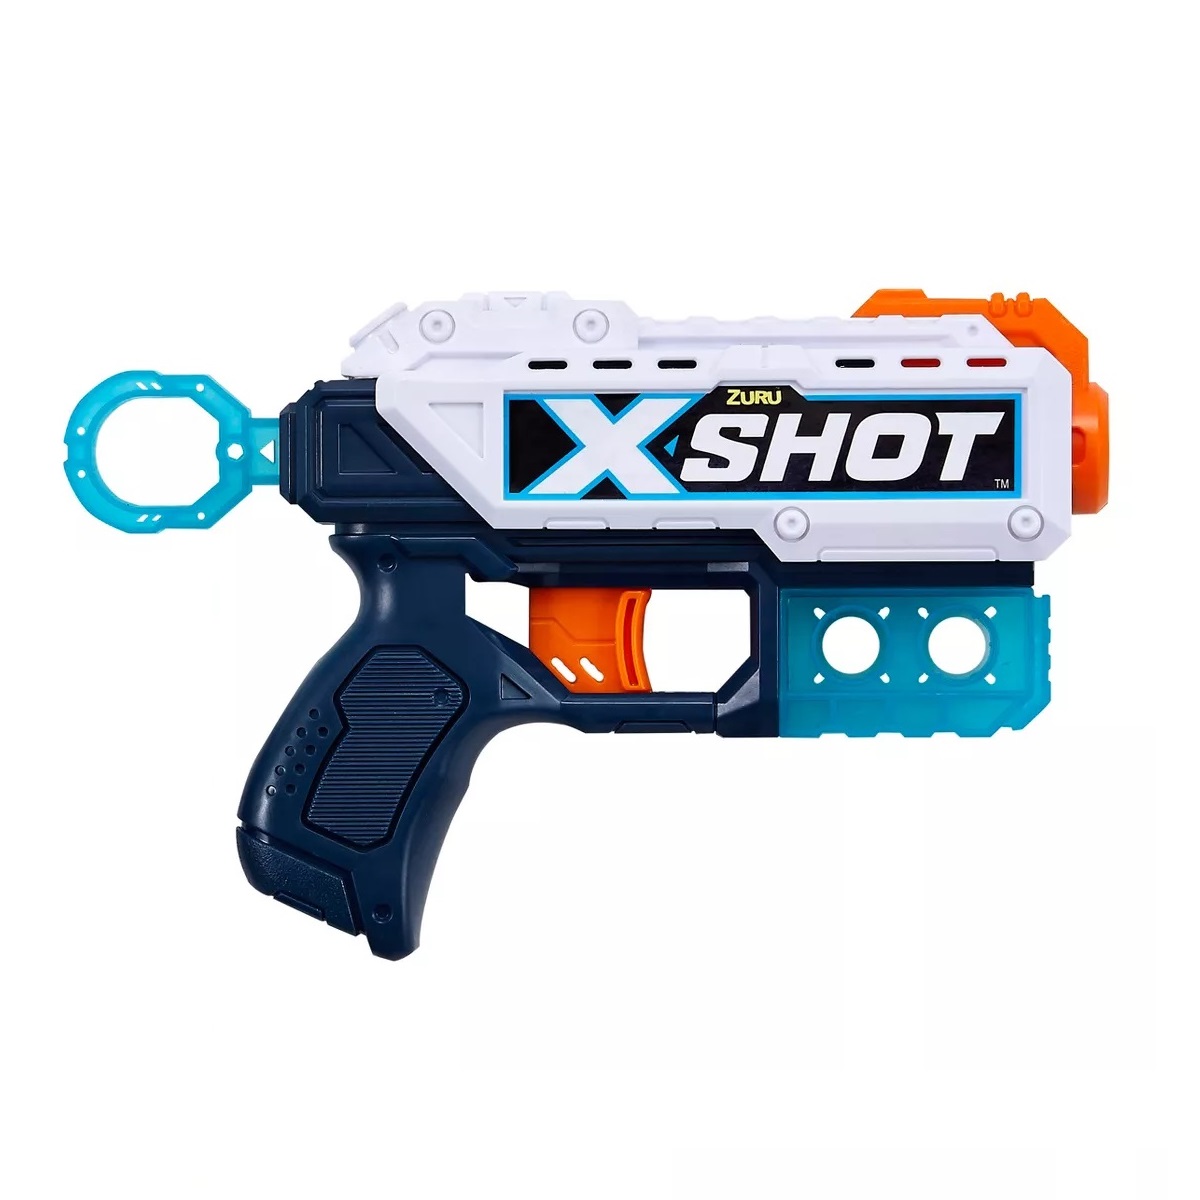 X-Shot Ultimate Shootout Pack giá rẻ nhất tại Nerfvietnam.com